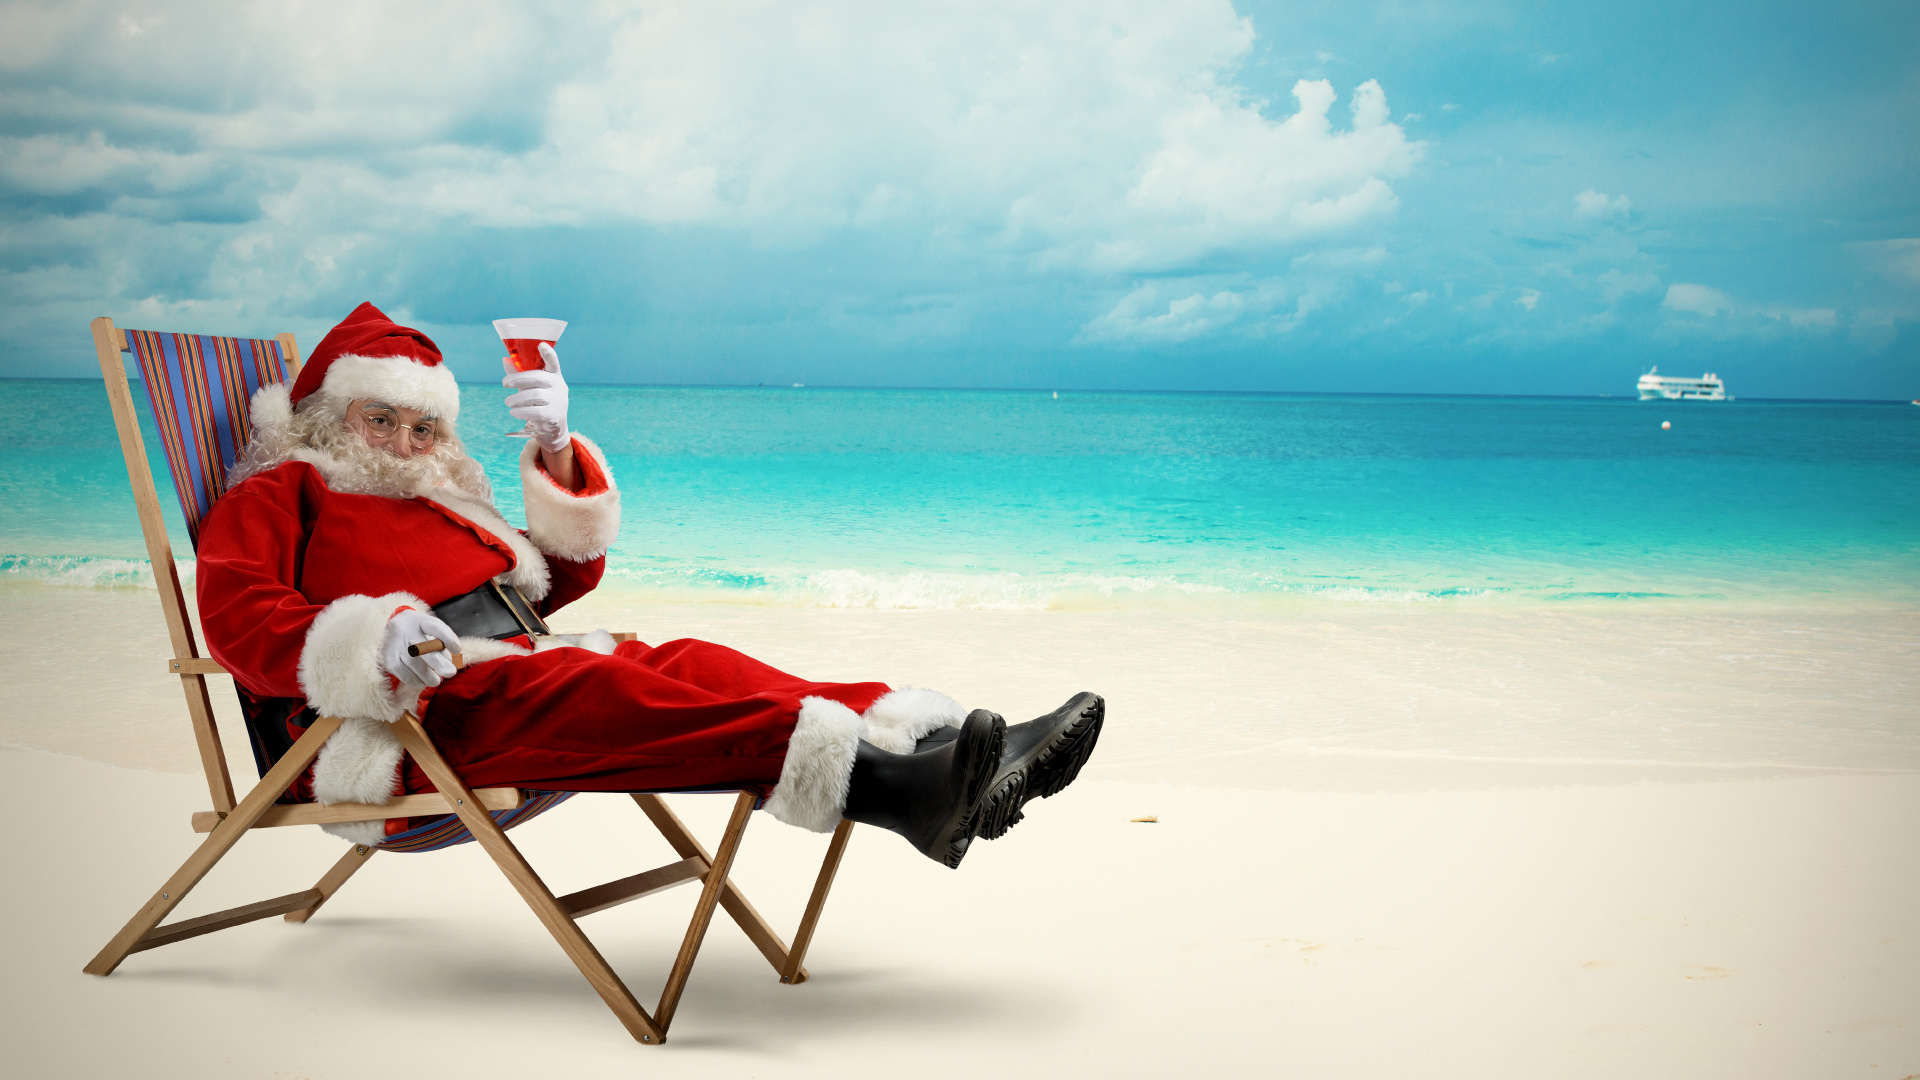 圣诞老人, 圣诞节那天, 大海, 度假, 海洋 壁纸 1920x1080 允许